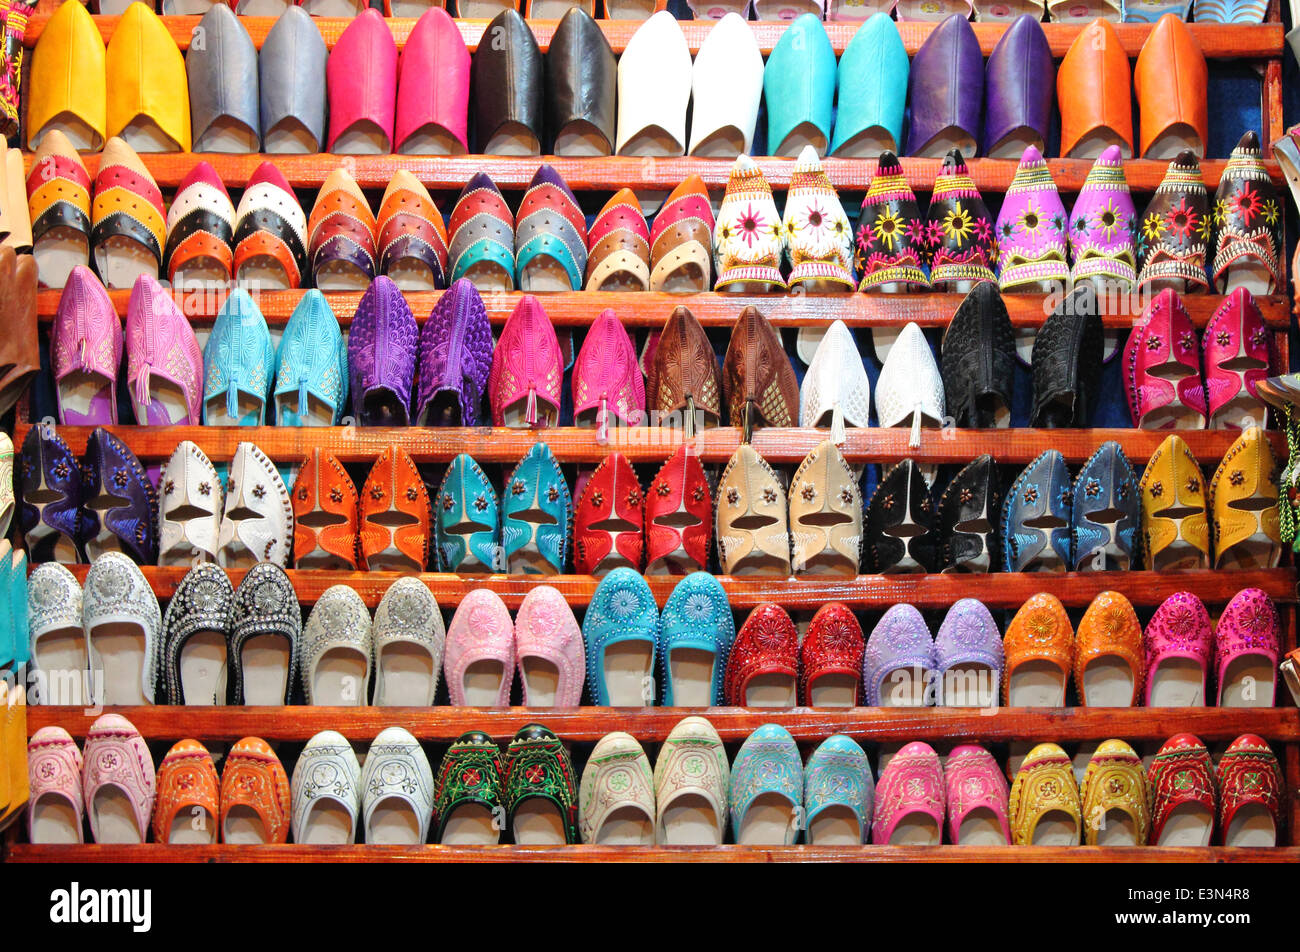 Marocchino in pelle pantofole per la vendita in un mercato in stallo Foto Stock